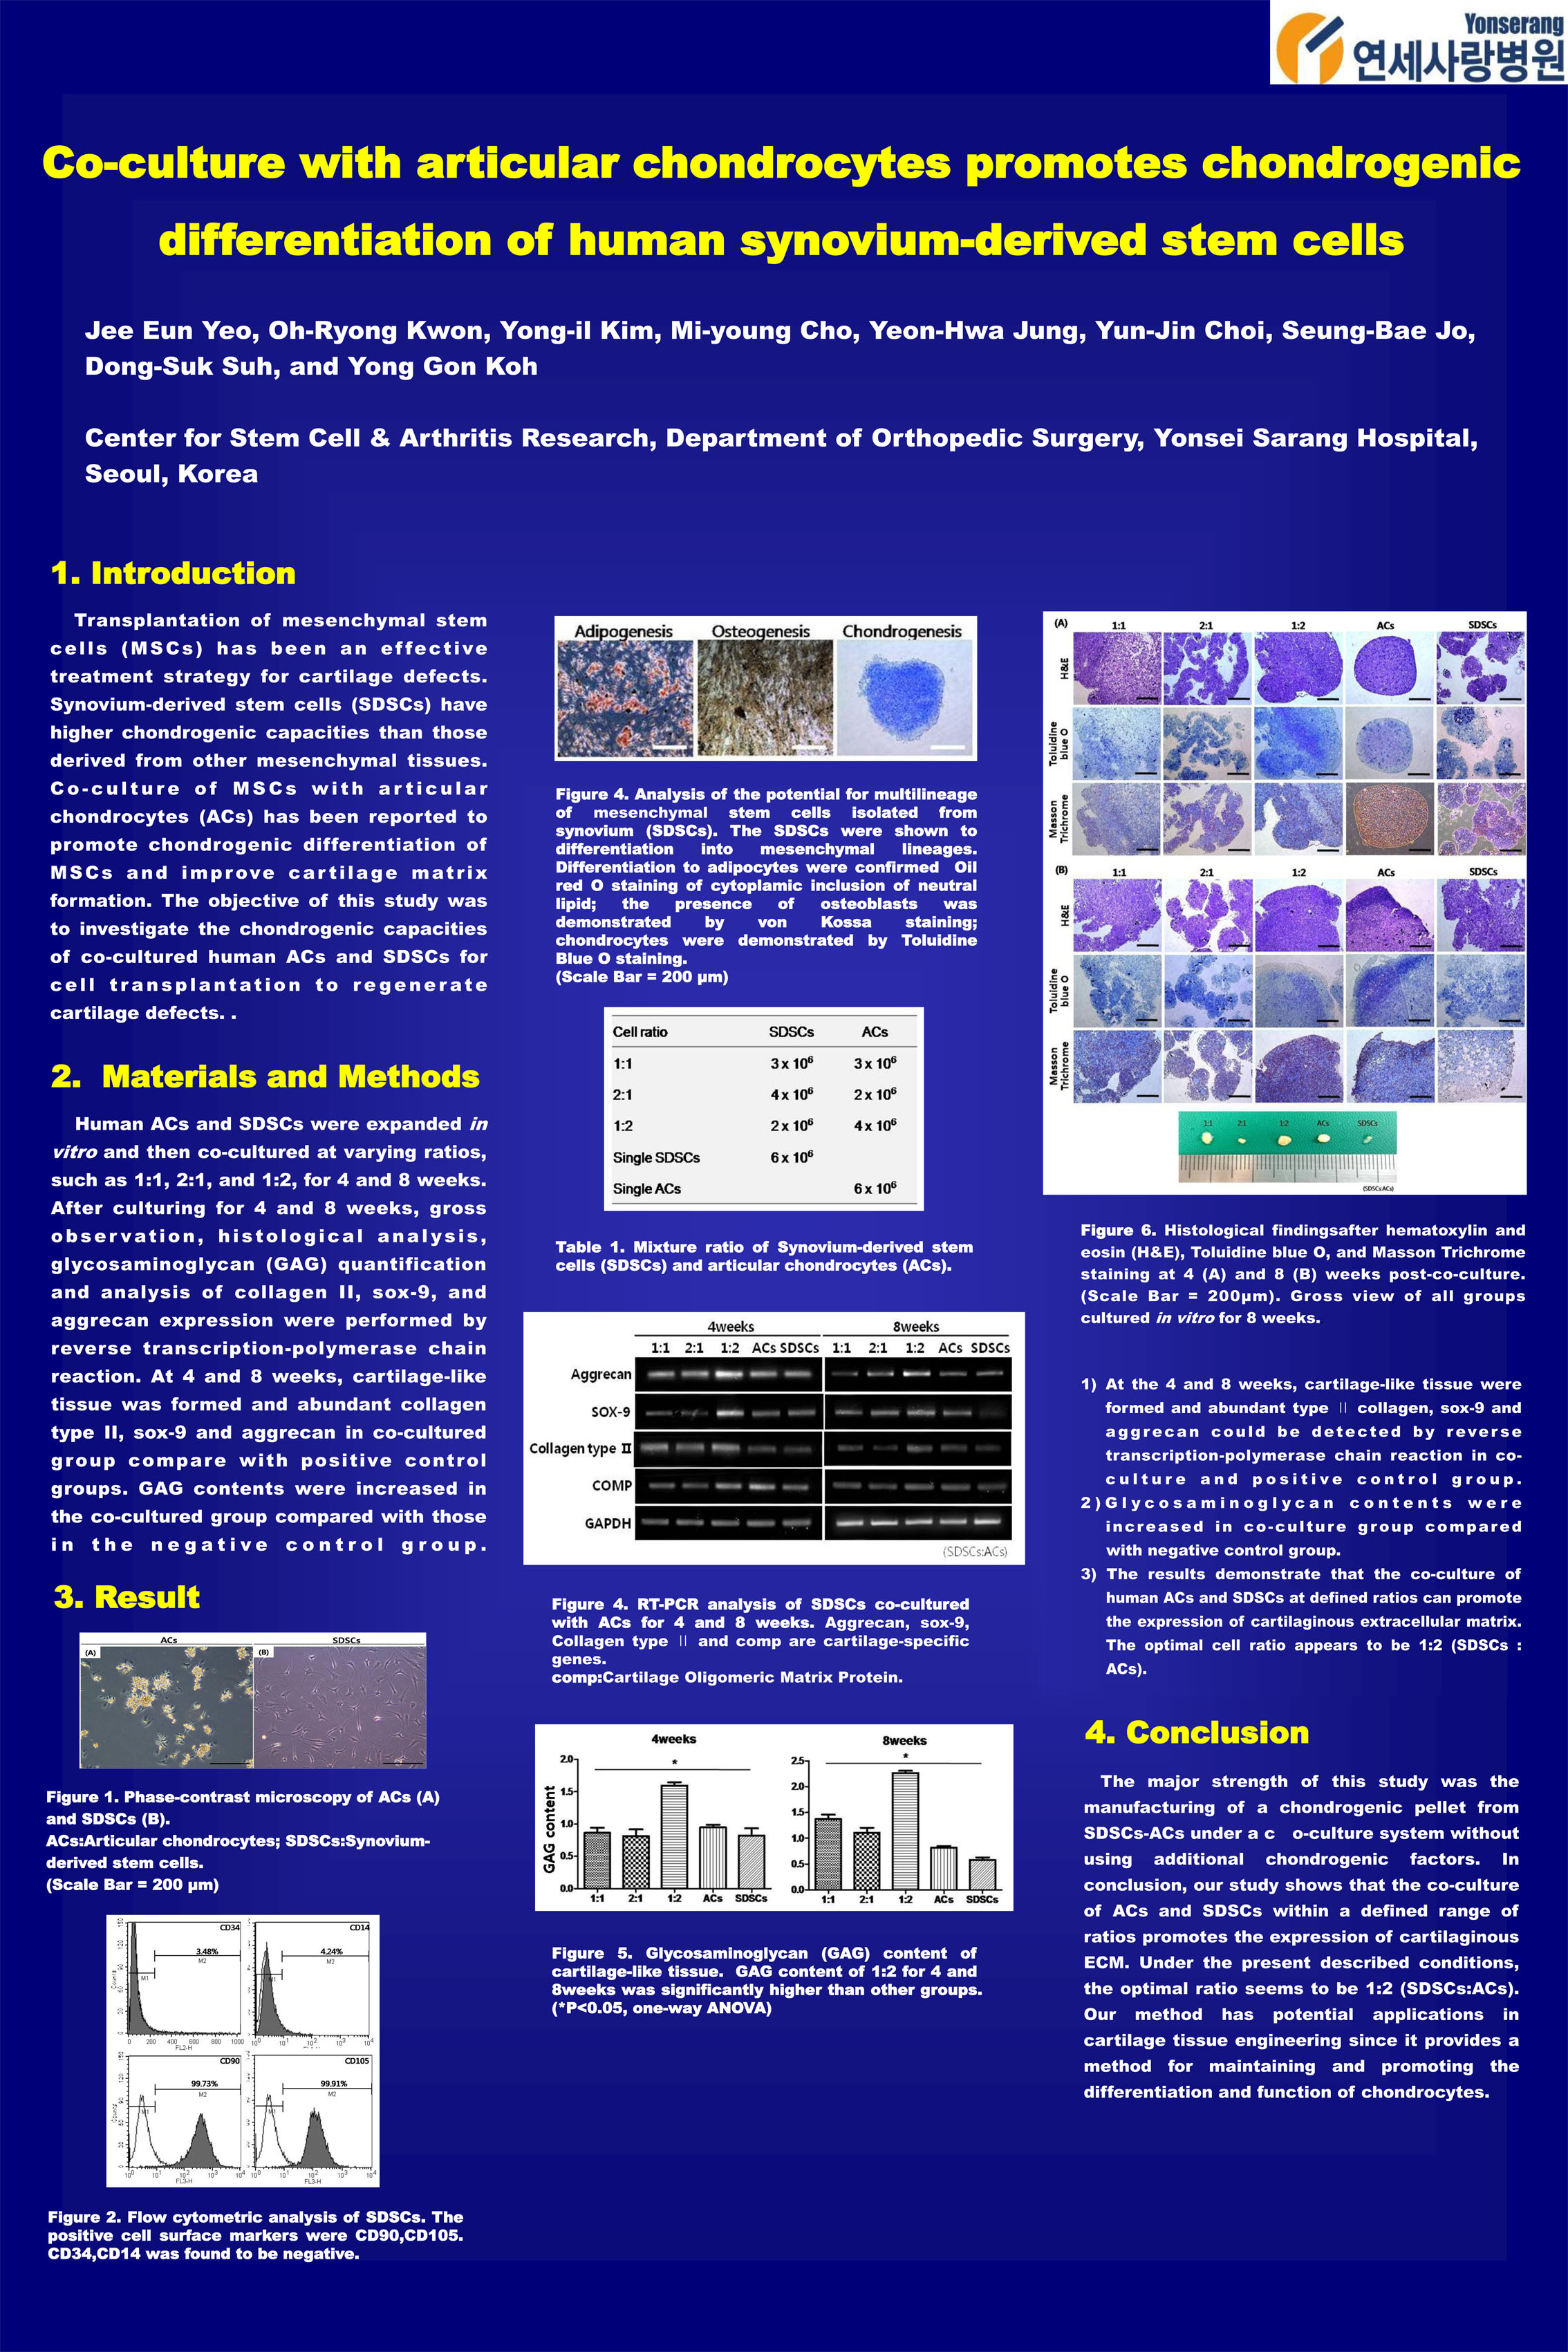 [2013 대한정형외과 추계학술대회-포스터] 연골세포와 공배양된 활막유래 중간엽줄기세포의 연골세포 분화 효과 게시글의 1번째 첨부파일입니다.